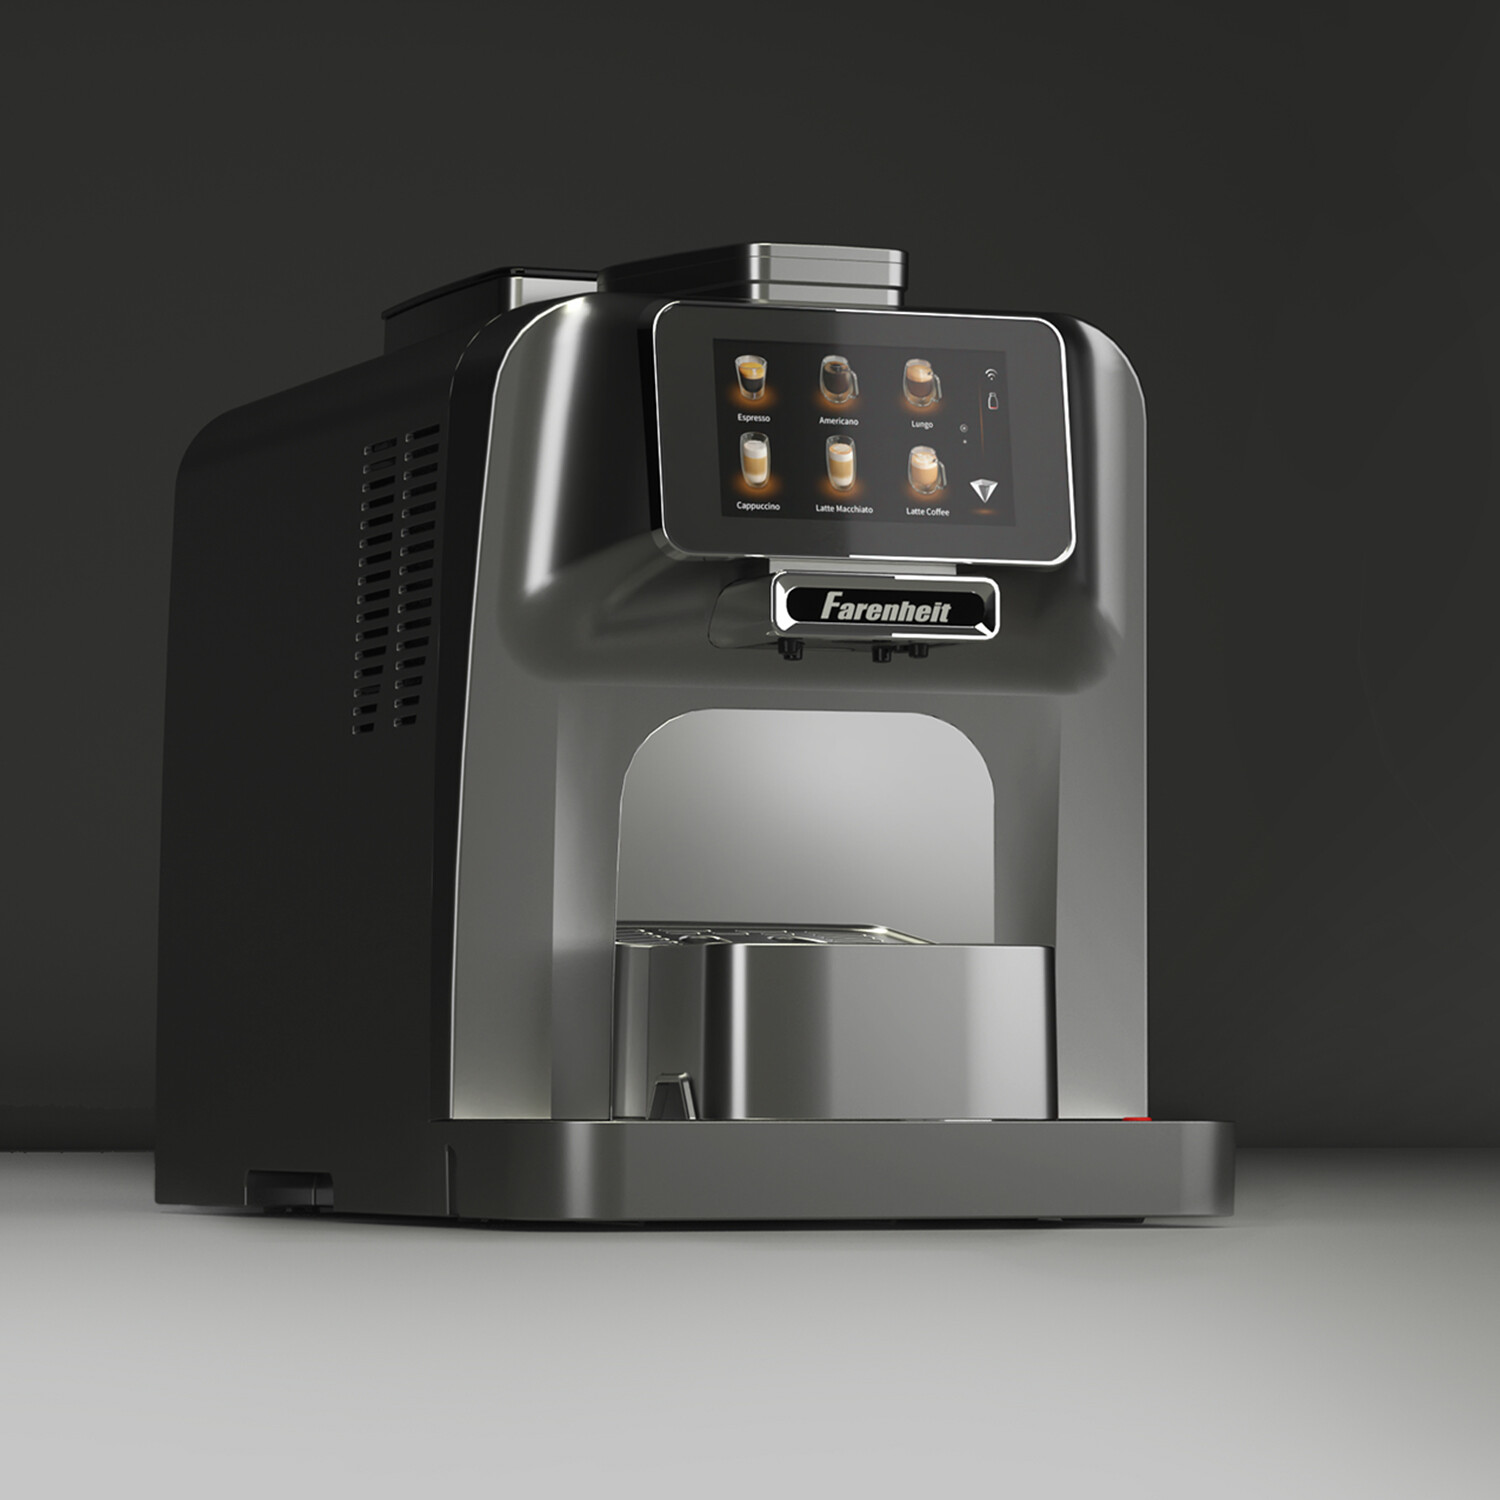  Farenheit Bevanda Prima Automatic Coffee Maker